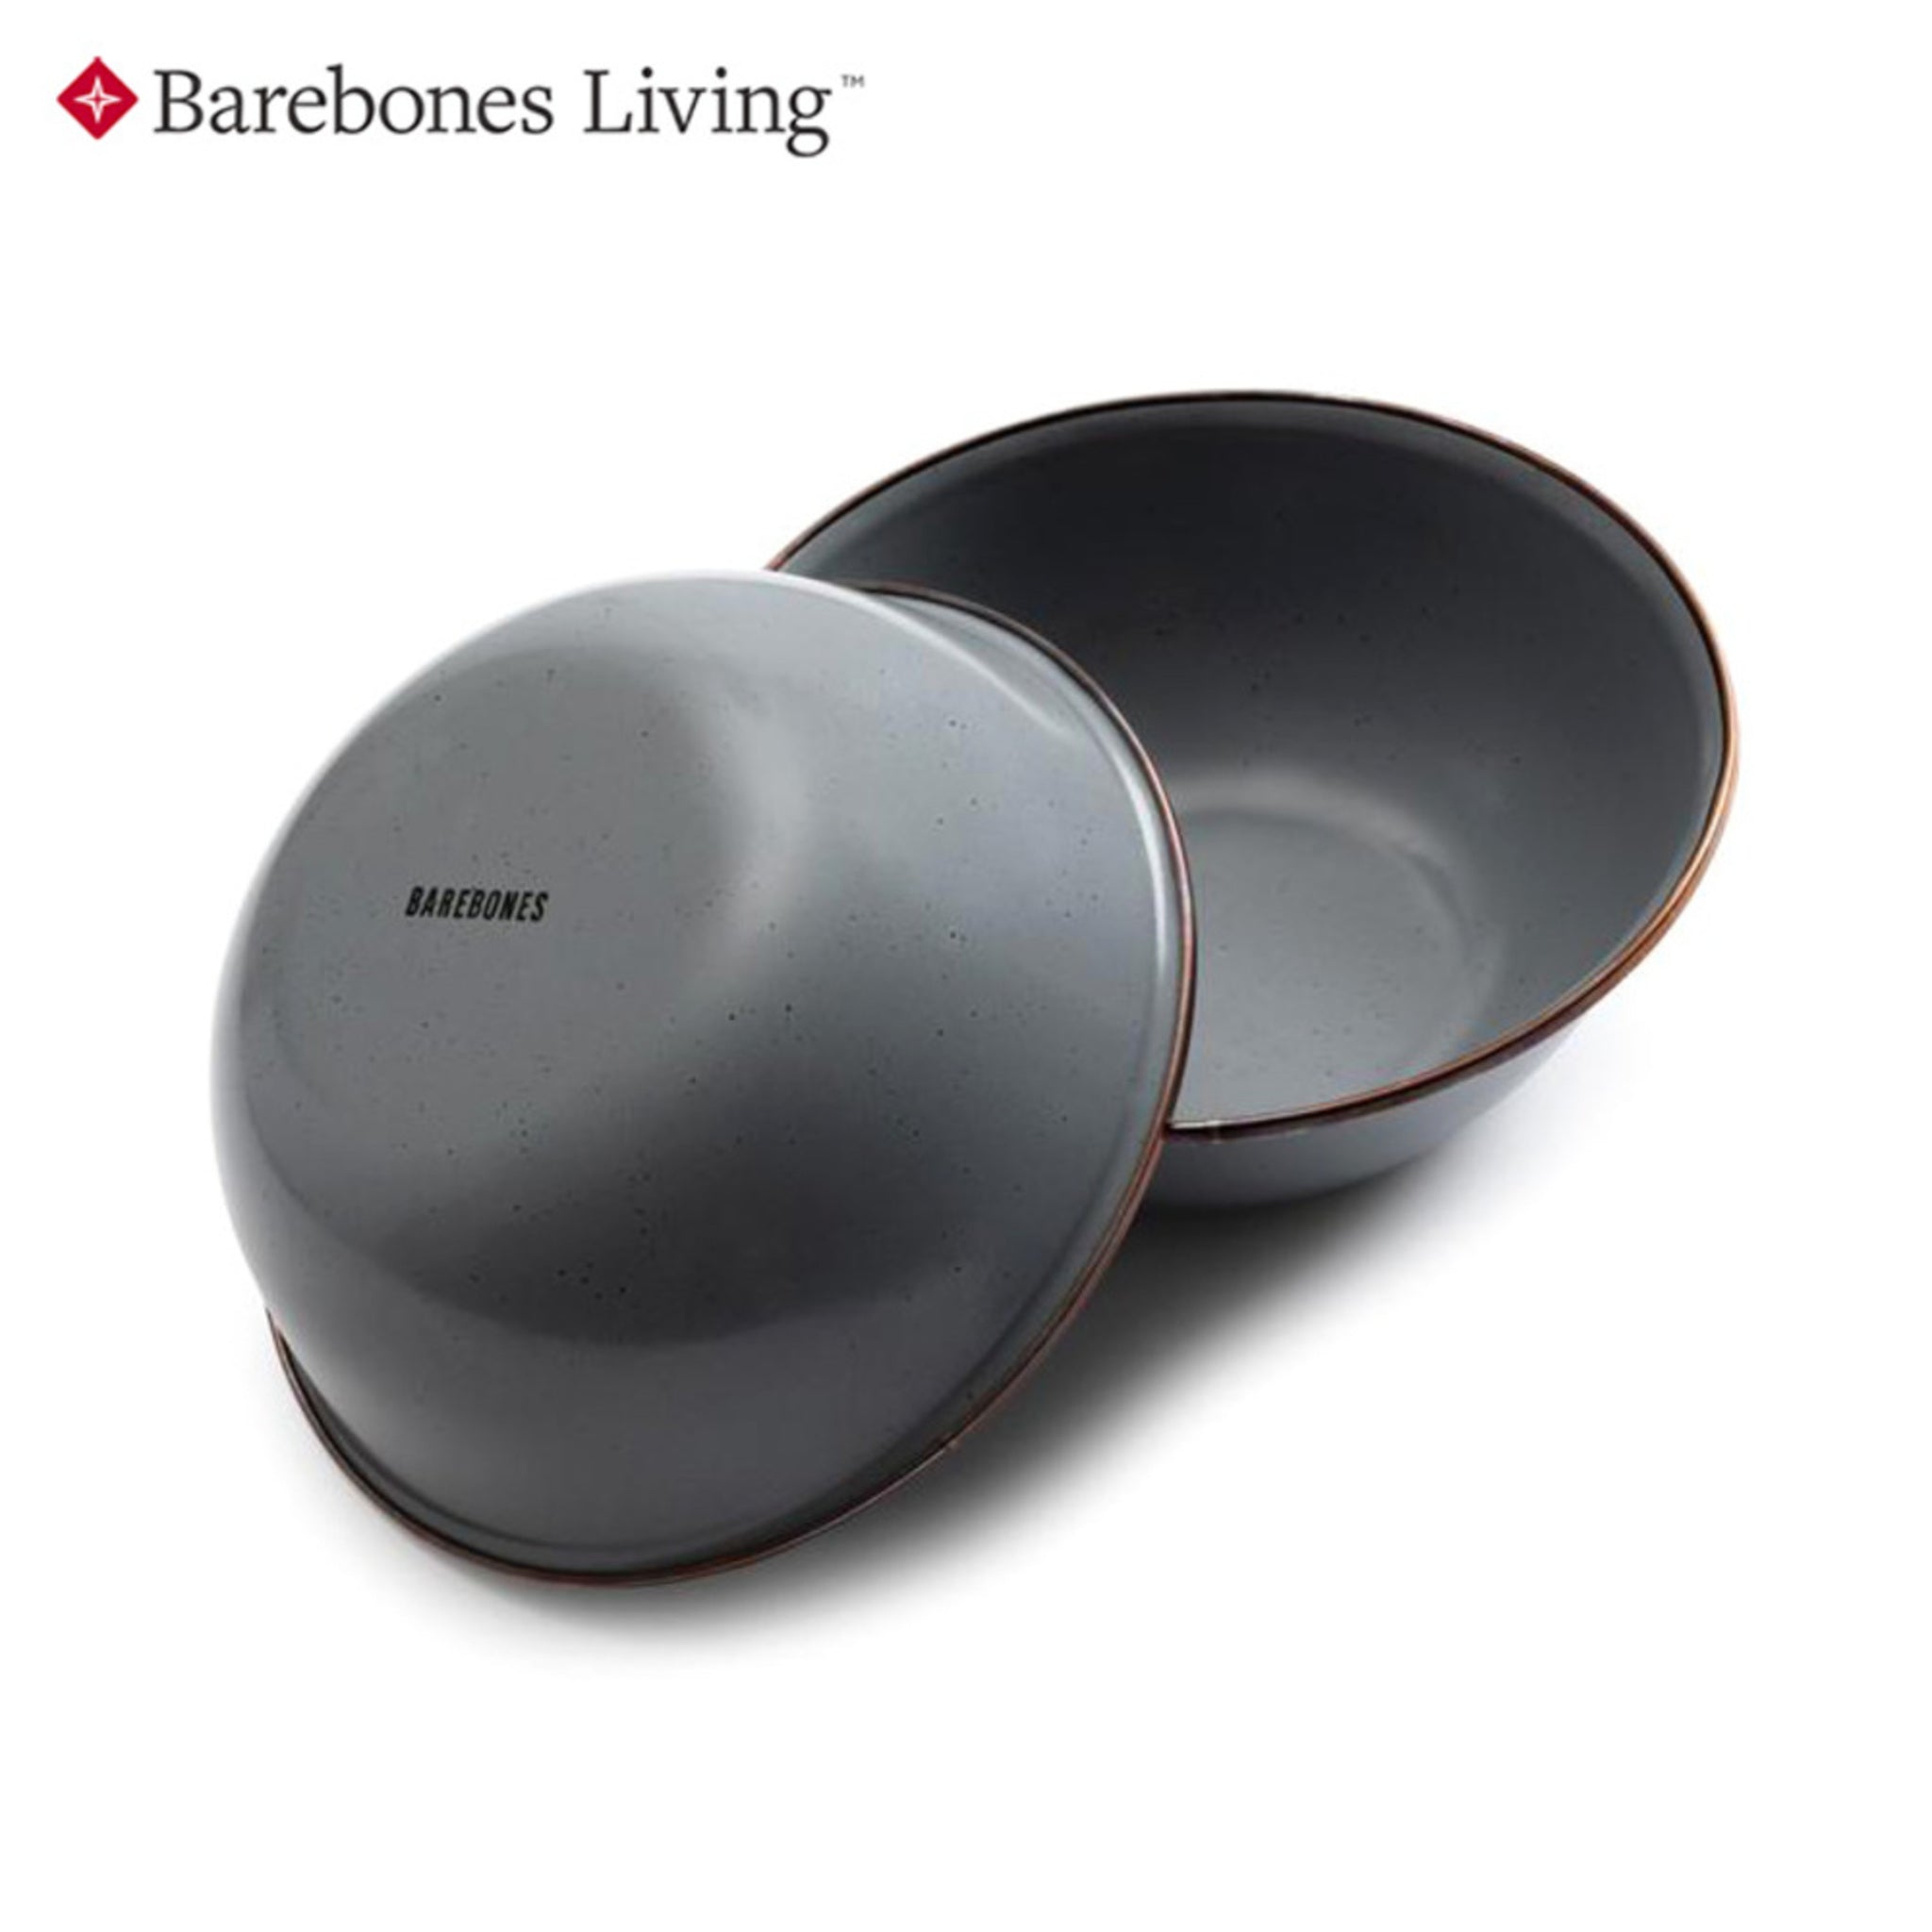 Barebones 琺瑯陶瓷碗組 兩入一組 CKW-357